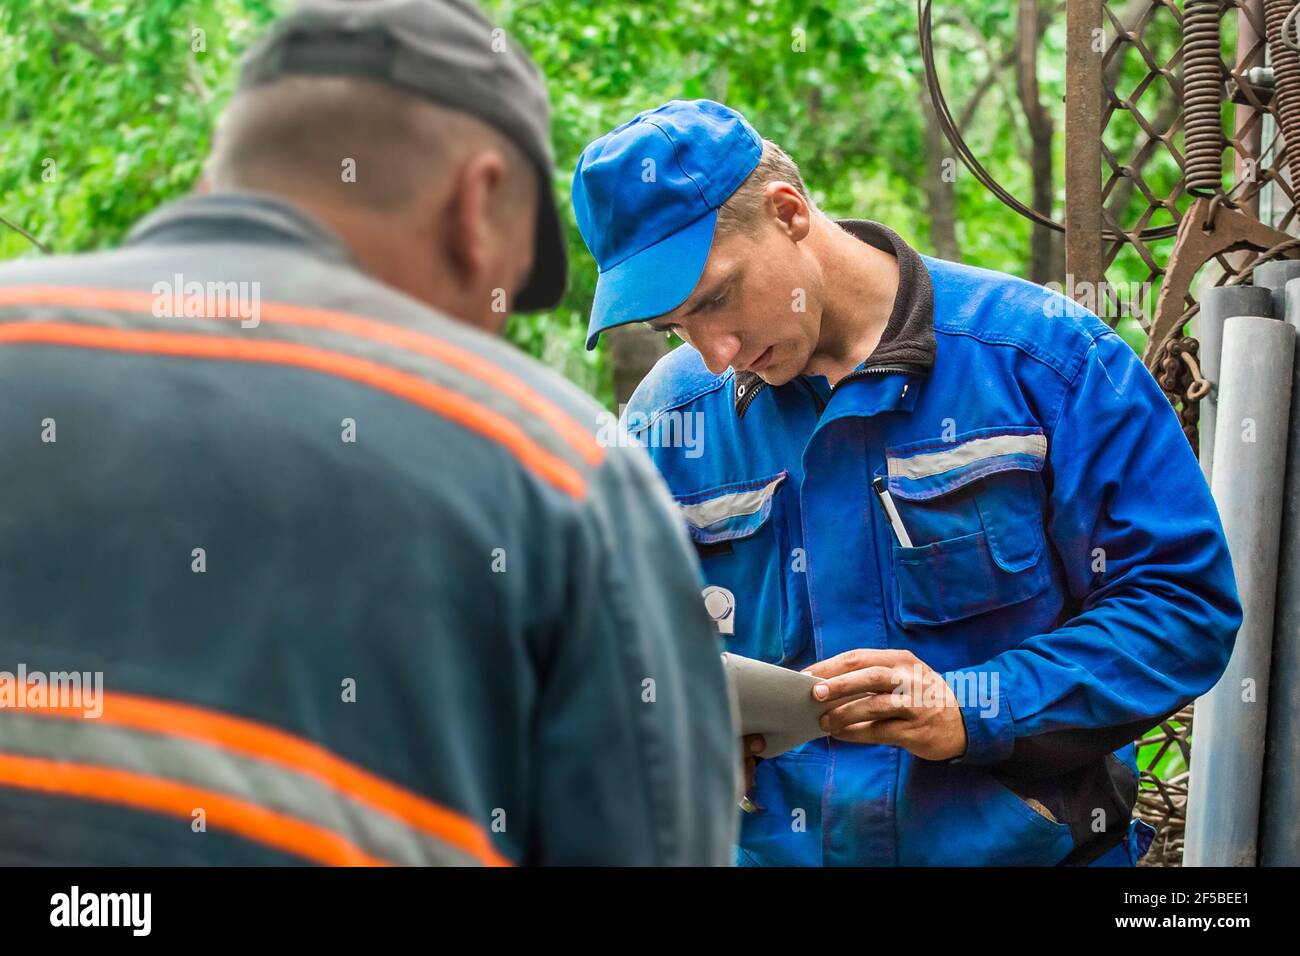 Bielorussia, regione di Minsk - 10 luglio 2020: Due lavoratori europei del gas maschile controllano la riconciliazione dei numeri delle bombole di gas. Foto Stock